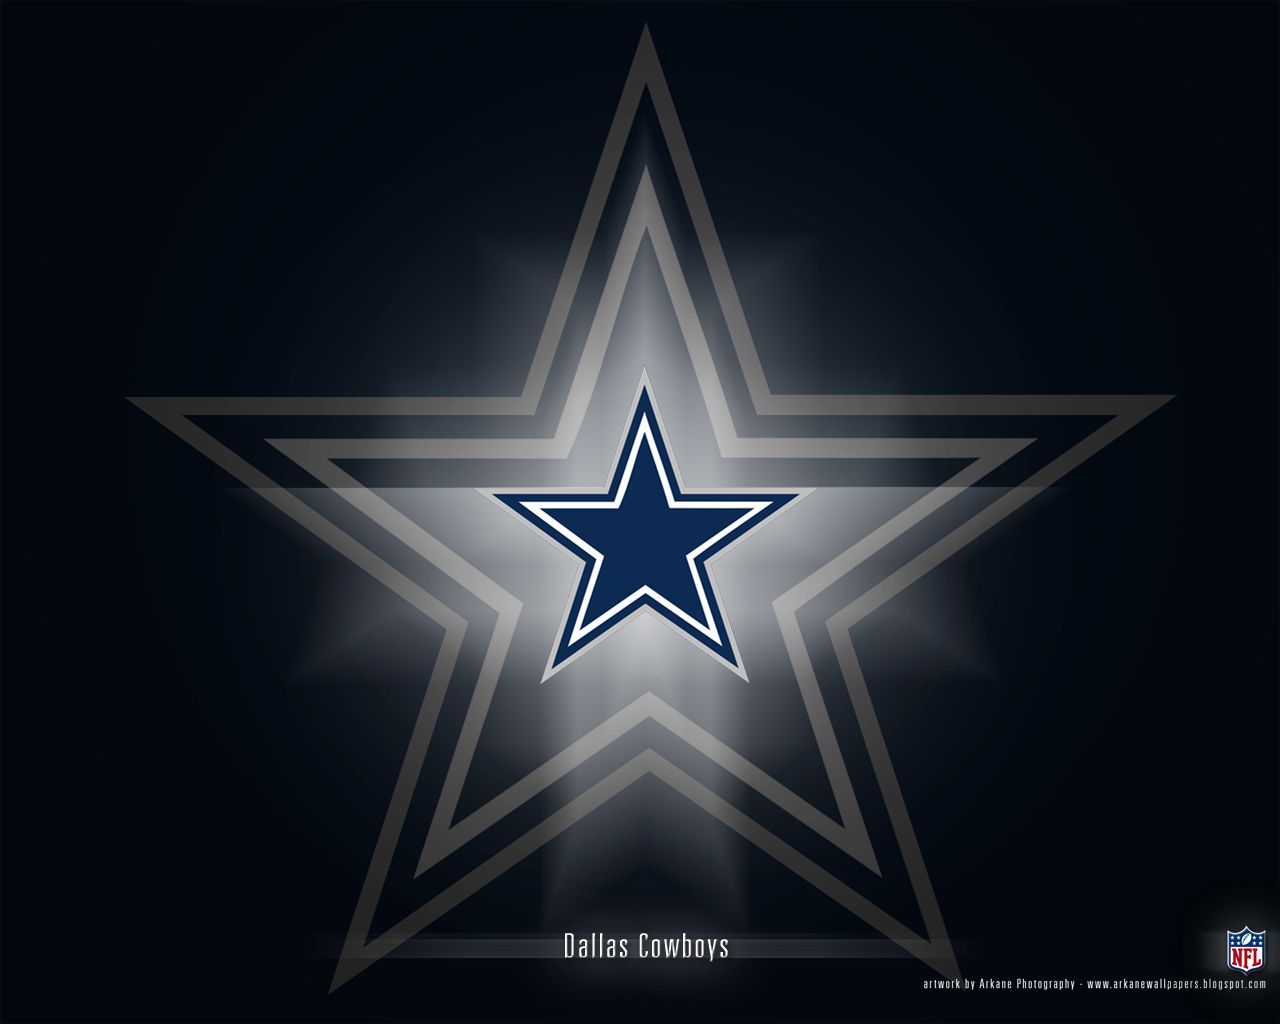 Dallas Cowboys - Dallas Cowboys Wallpaper (9173313) - Fanpop